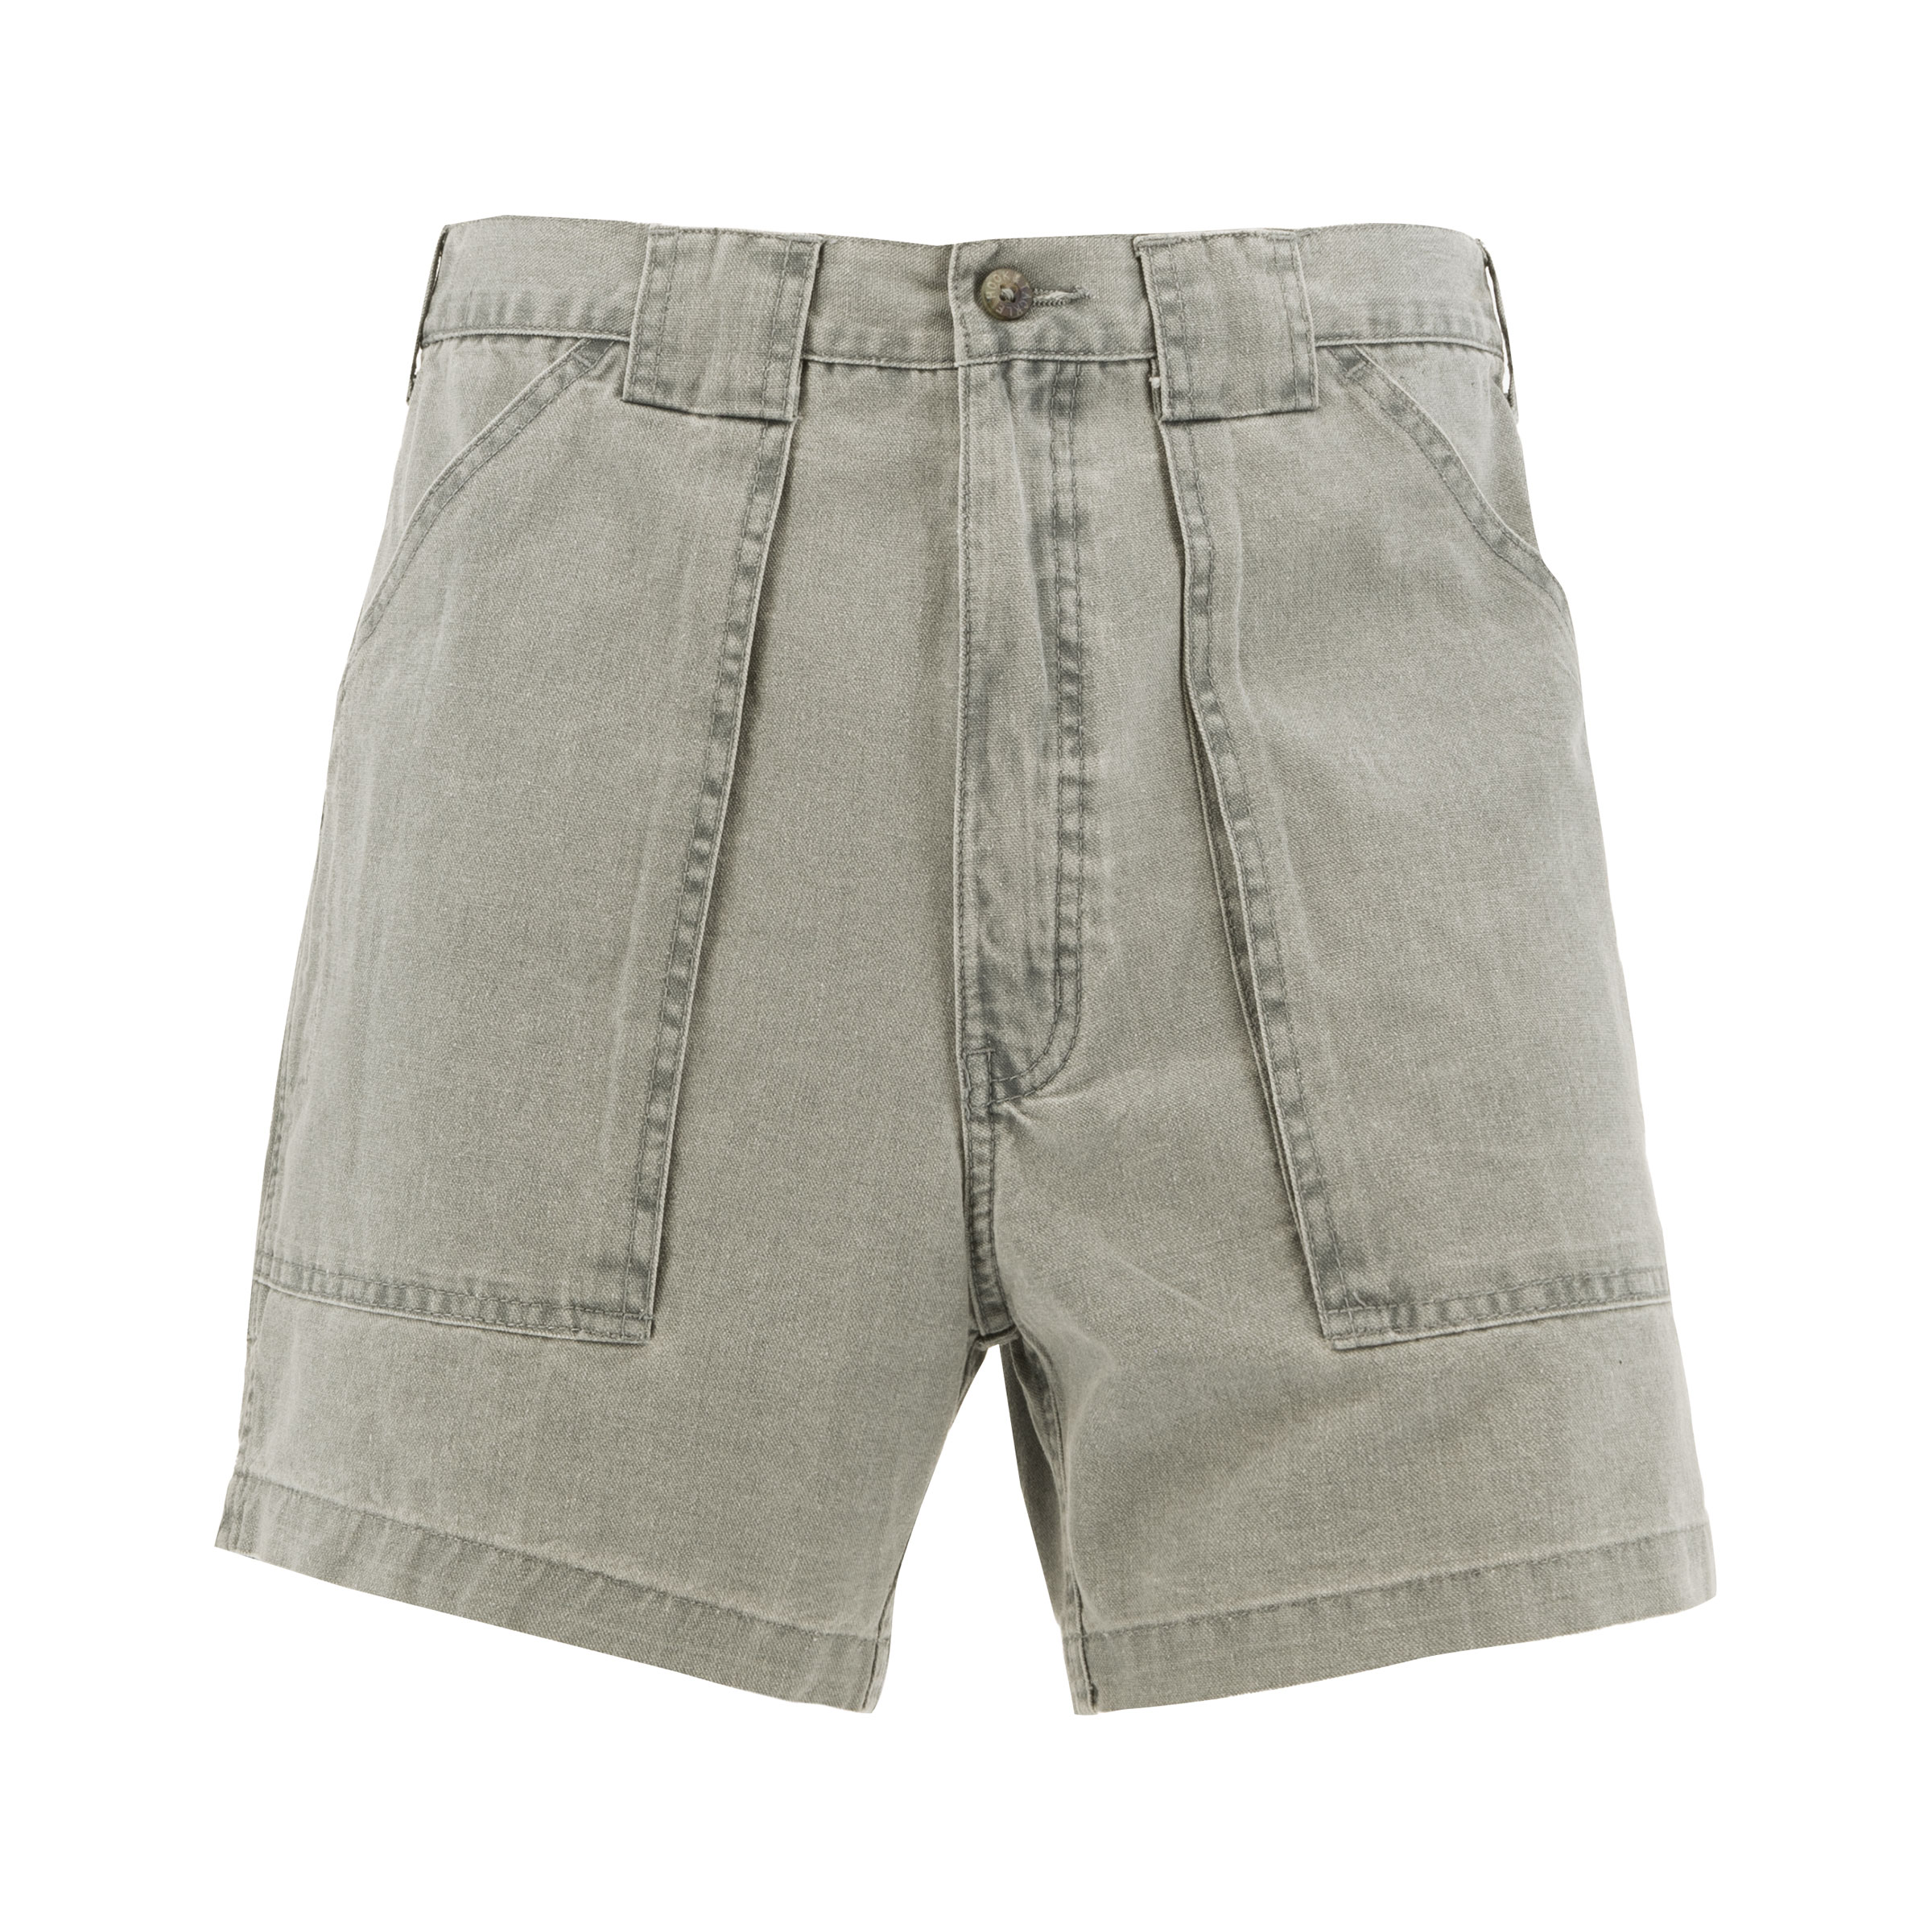 Regular Size Hook & Tackle Shorts for Men for sale